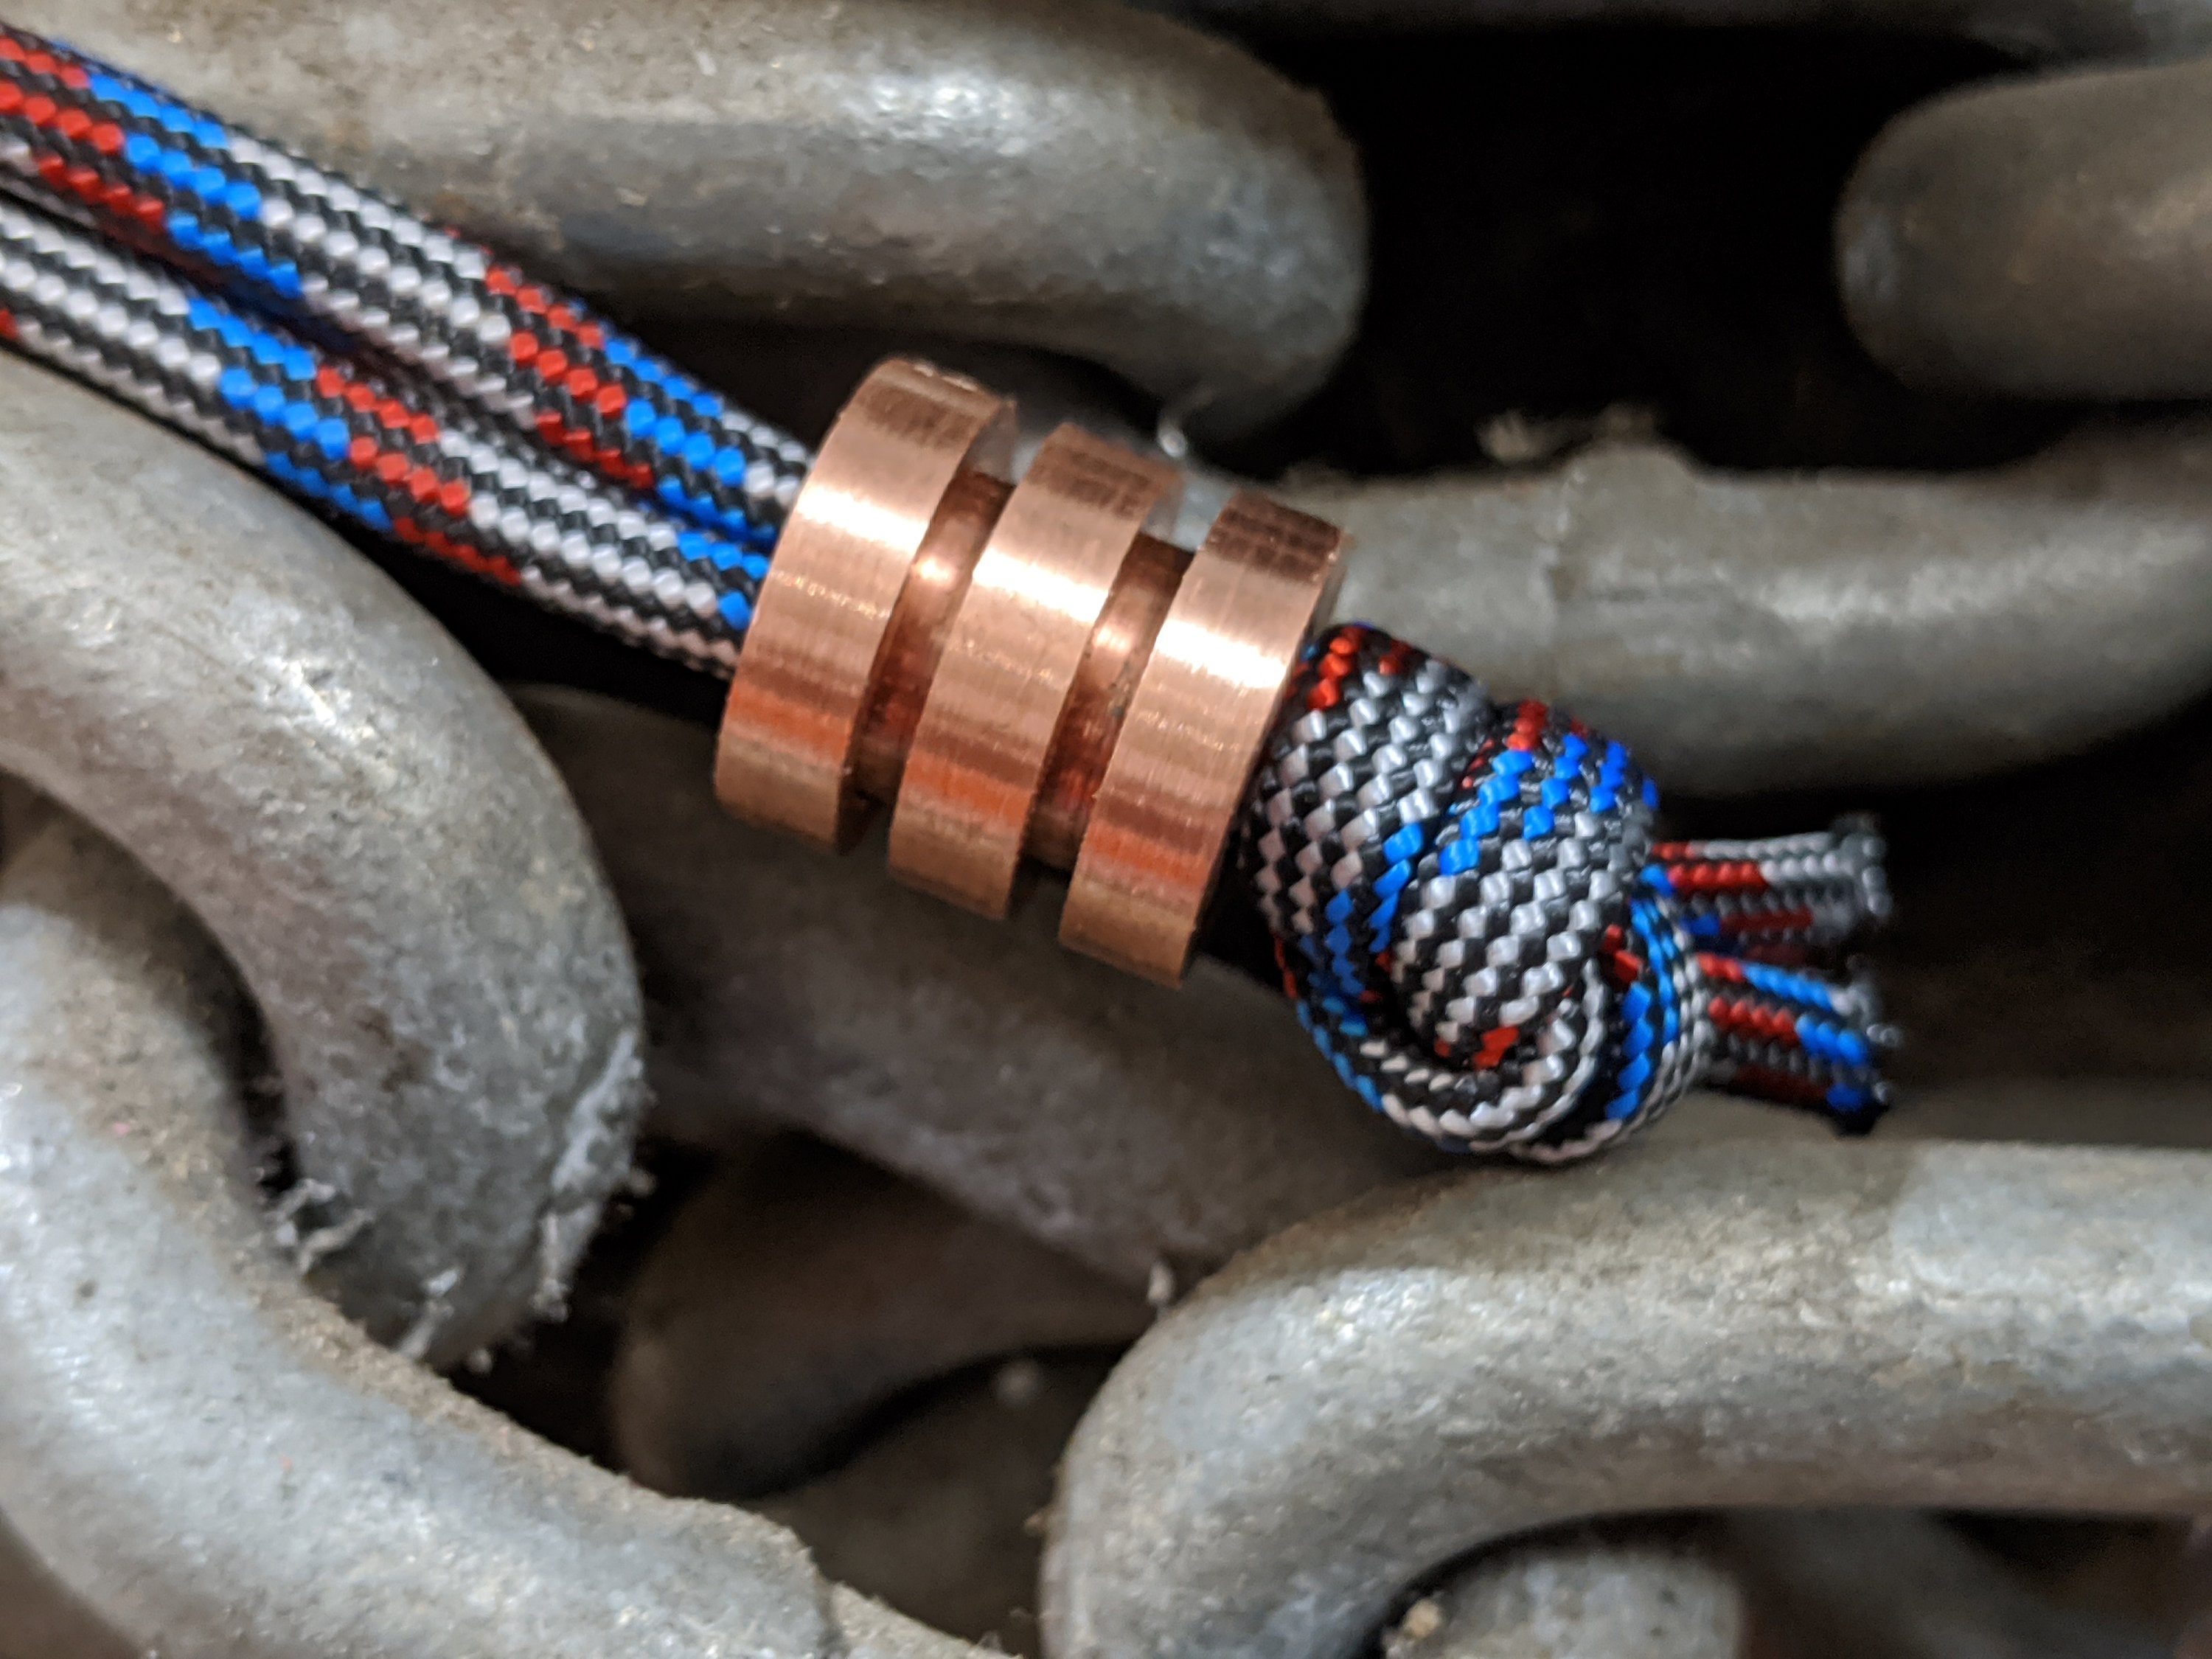 Copper Skull Beads For String Bracelet,Knife Lanyard Charm – Metal